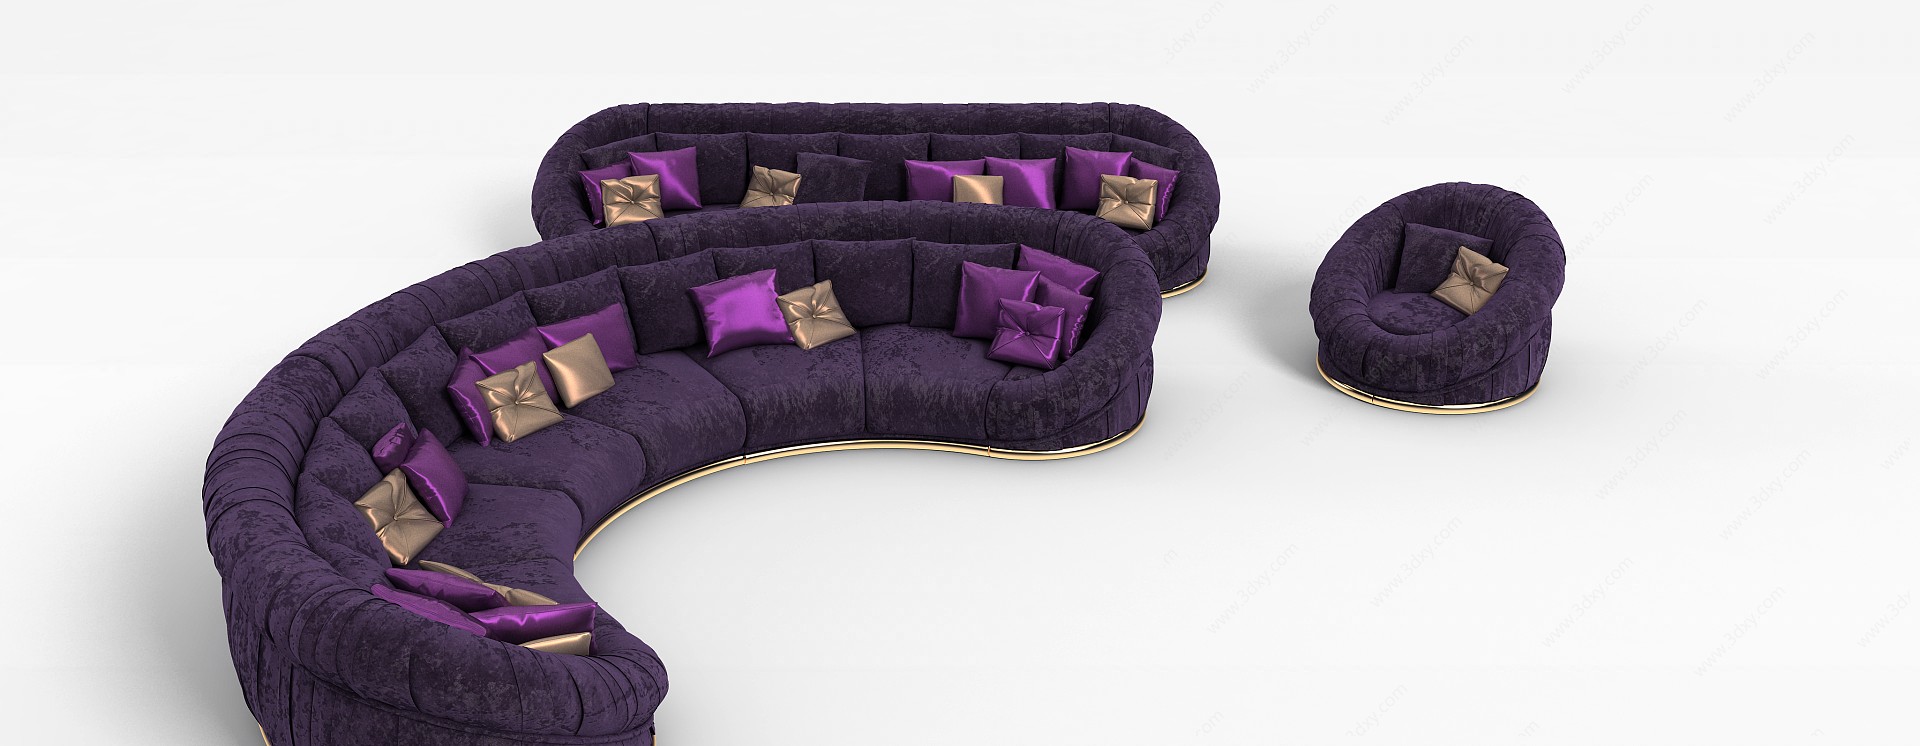 紫色布艺沙发3D模型